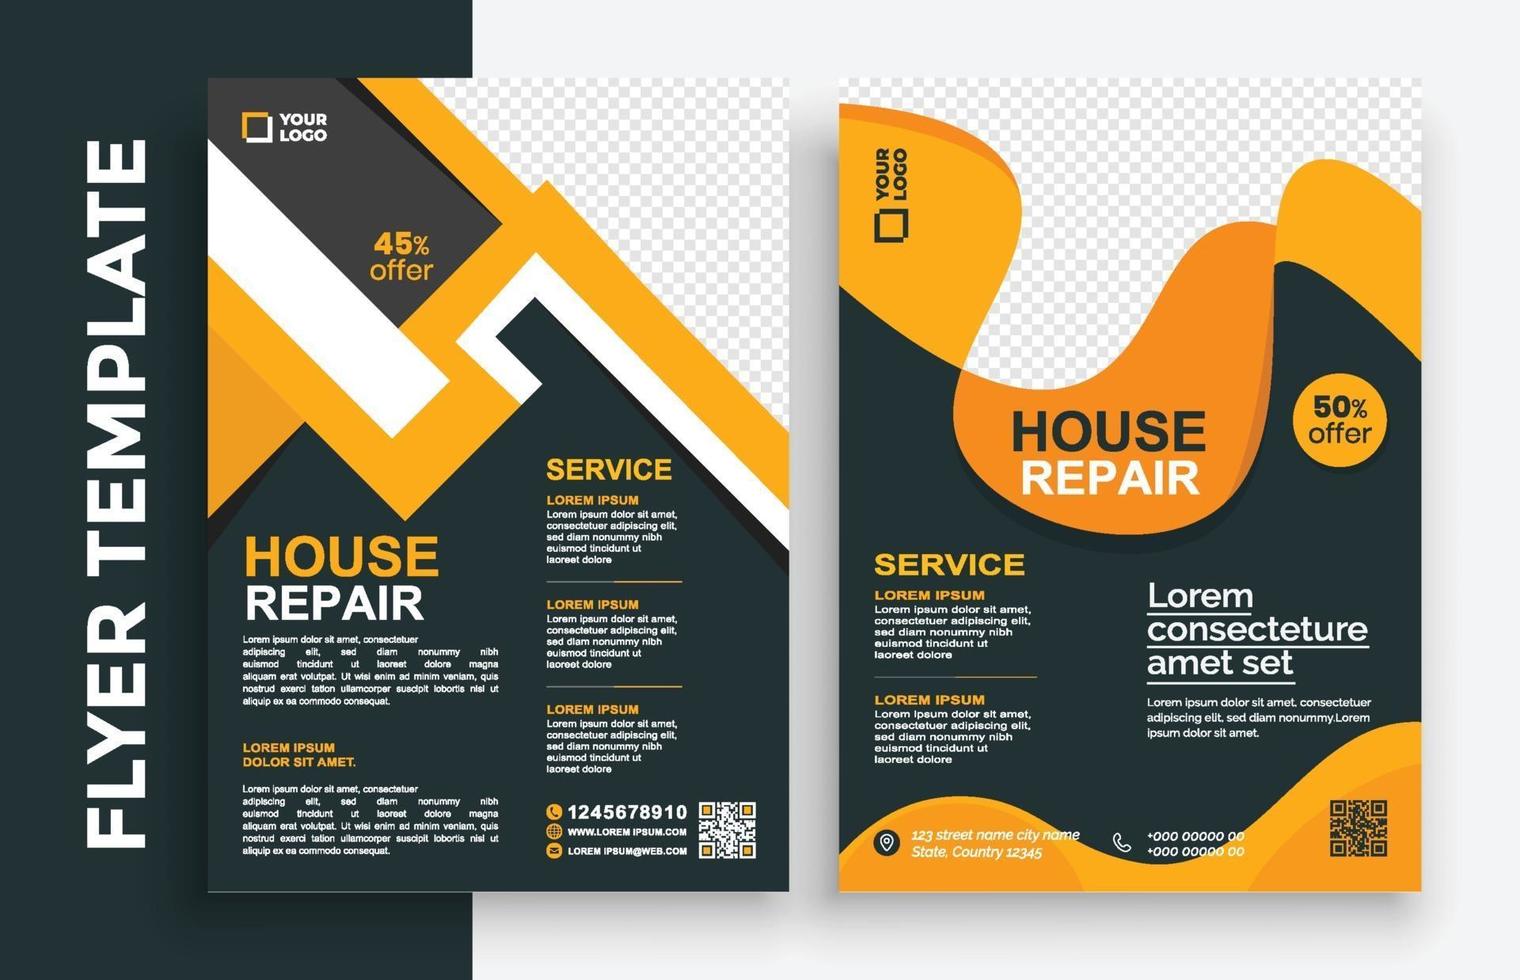 Dépliant d'affaires immobilier gratuit affiche brochure brochure couverture conception mise en page arrière-plan, modèle vectoriel au format a4 - vecteur